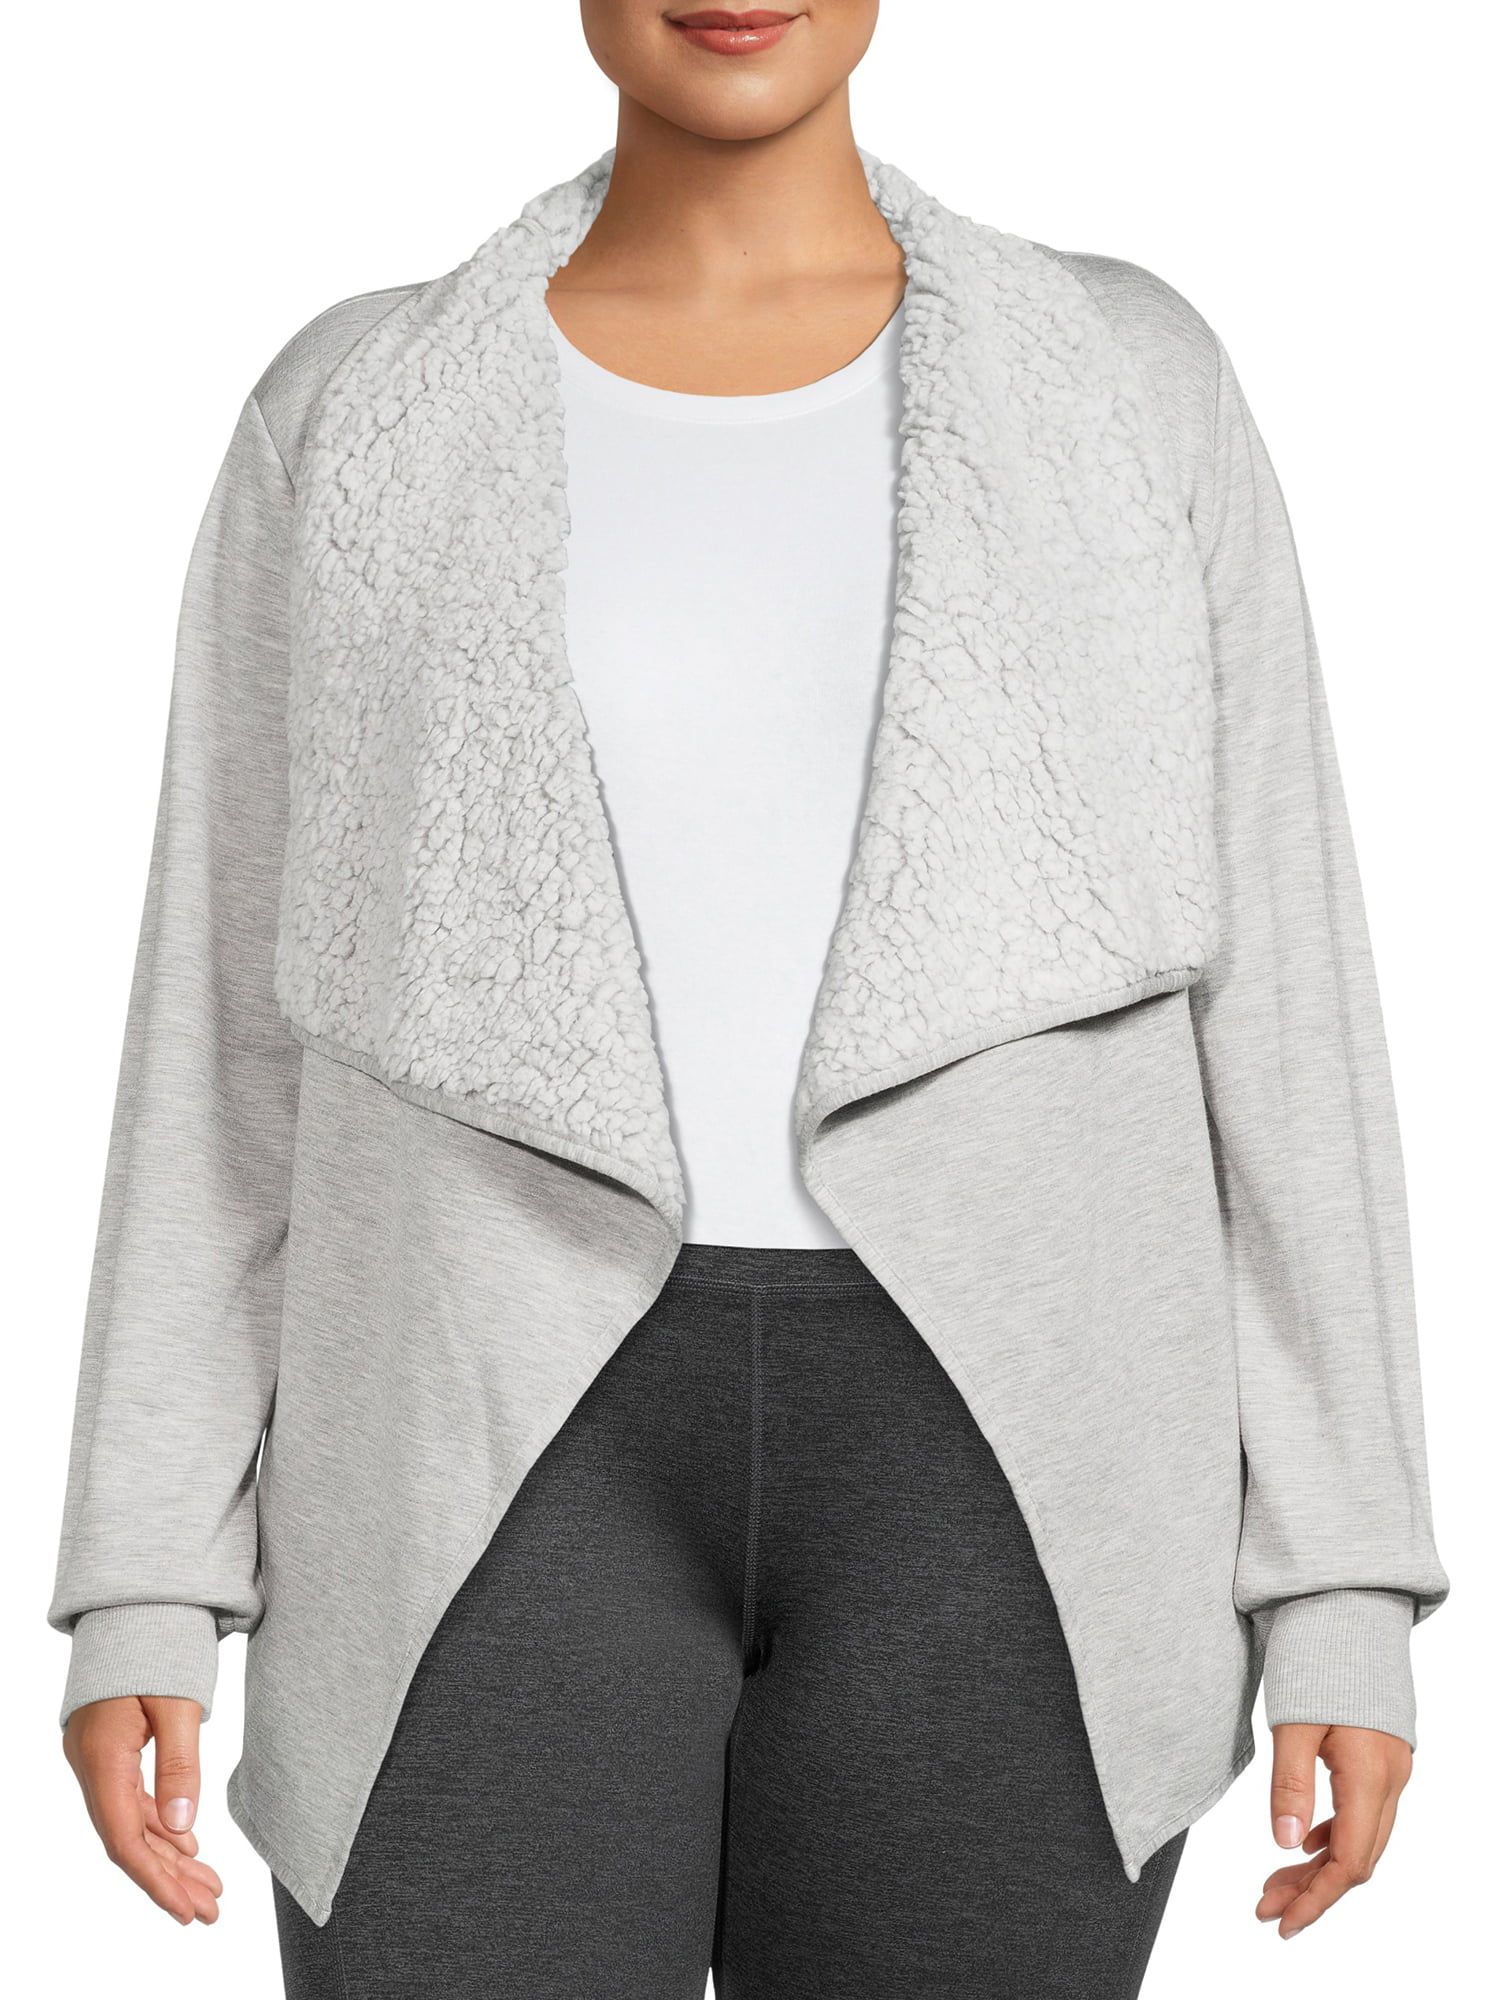 Avia Women's Plus Size Faux Sherpa Lined Cardigan | Walmart (US)